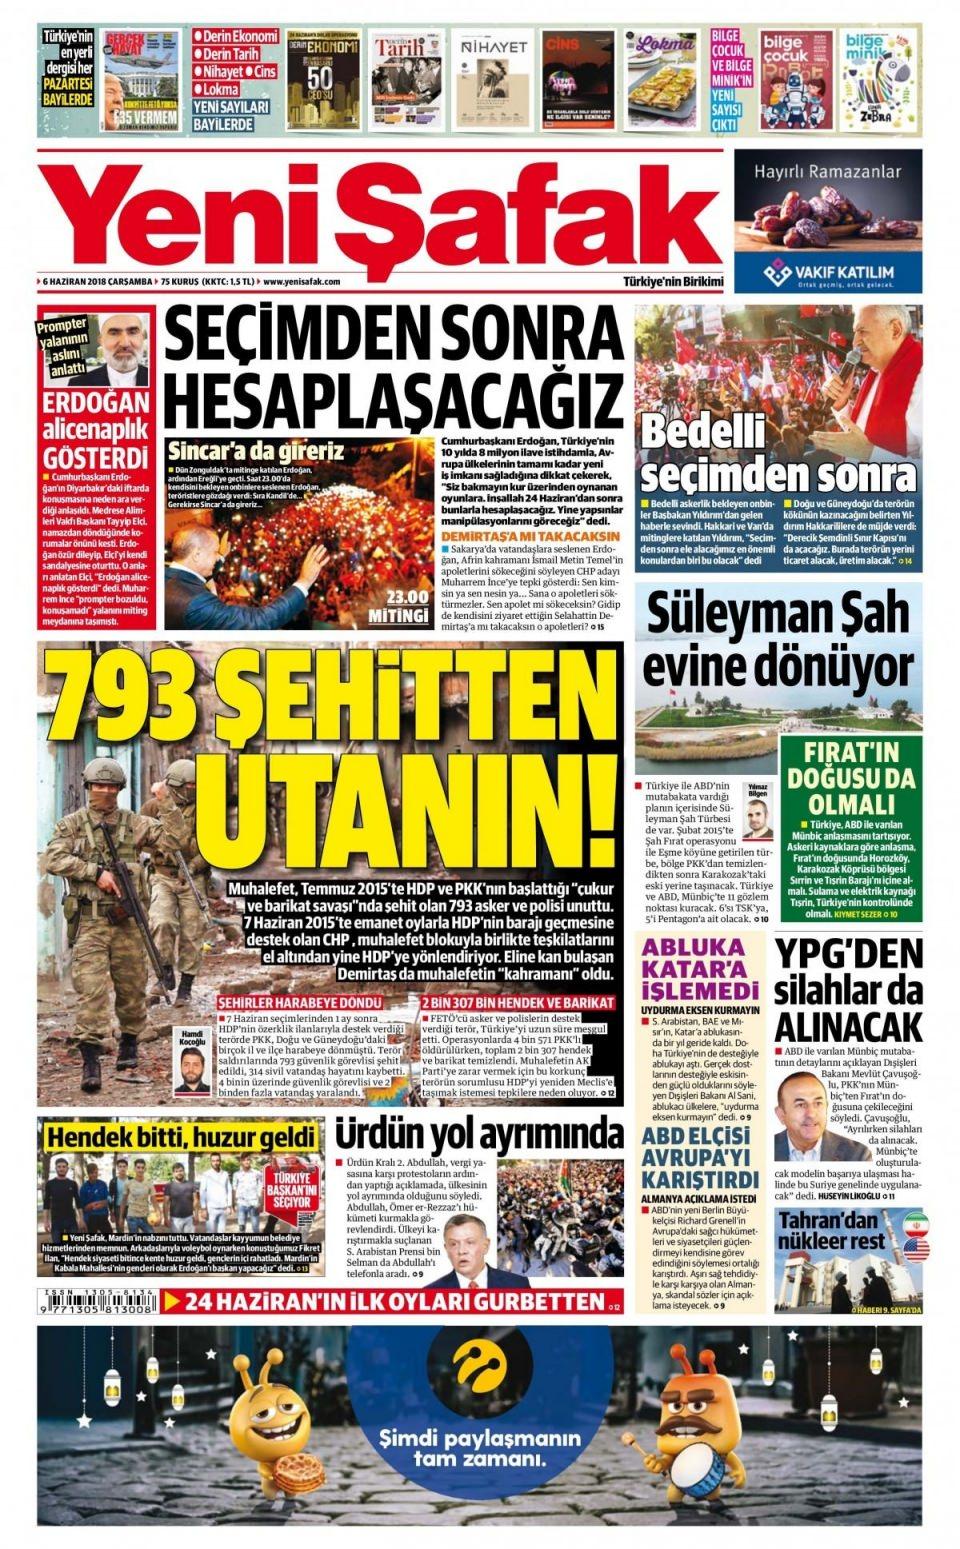 <p>Muhalefet, Temmuz 2015’te HDP ve PKK’nın başlattığı “çukur ve barikat savaşı”nda şehit olan 793 asker ve polisi unuttu. 7 Haziran 2015’te emanet oylarla HDP’nin barajı geçmesine destek olan CHP , muhalefet blokuyla birlikte teşkilatlarını el altından yine HDP’ye yönlendiriyor. Eline kan bulaşan Demirtaş da muhalefetin “kahramanı” oldu. 7 Haziran seçimlerinden 1 ay sonra HDP’nin özerklik ilanlarıyla destek verdiği terörde PKK, Doğu ve Güneydoğu’daki birçok il ve ilçe harabeye dönmüştü. Terör saldırılarında 793 güvenlik görevlisi şehit edildi, 314 sivil vatandaş hayatını kaybetti. 4 binin üzerinde güvenlik görevlisi ve 2 binden fazla vatandaş yaralandı.</p>

<p> </p>
